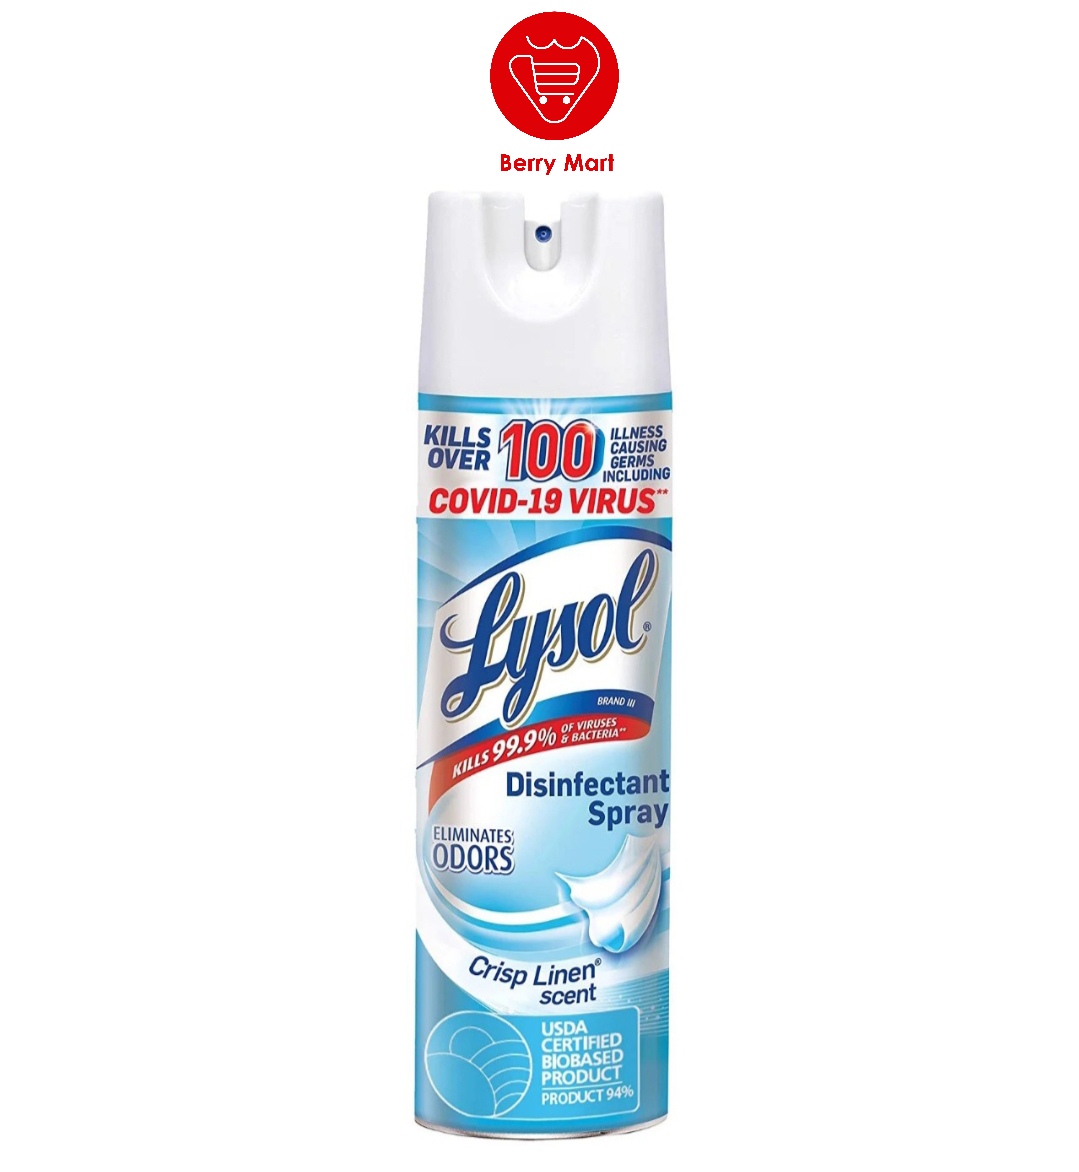 Xịt phòng diệt khuẩn Lysol Disinfectant Spray 538g của Mỹ | hiệu quả tiêu diệt virus, vi khuẩn đến 99,9%. Hiệu quả diệt hơn 100 vi trùng gây bệnh | Berry Mart | BR235